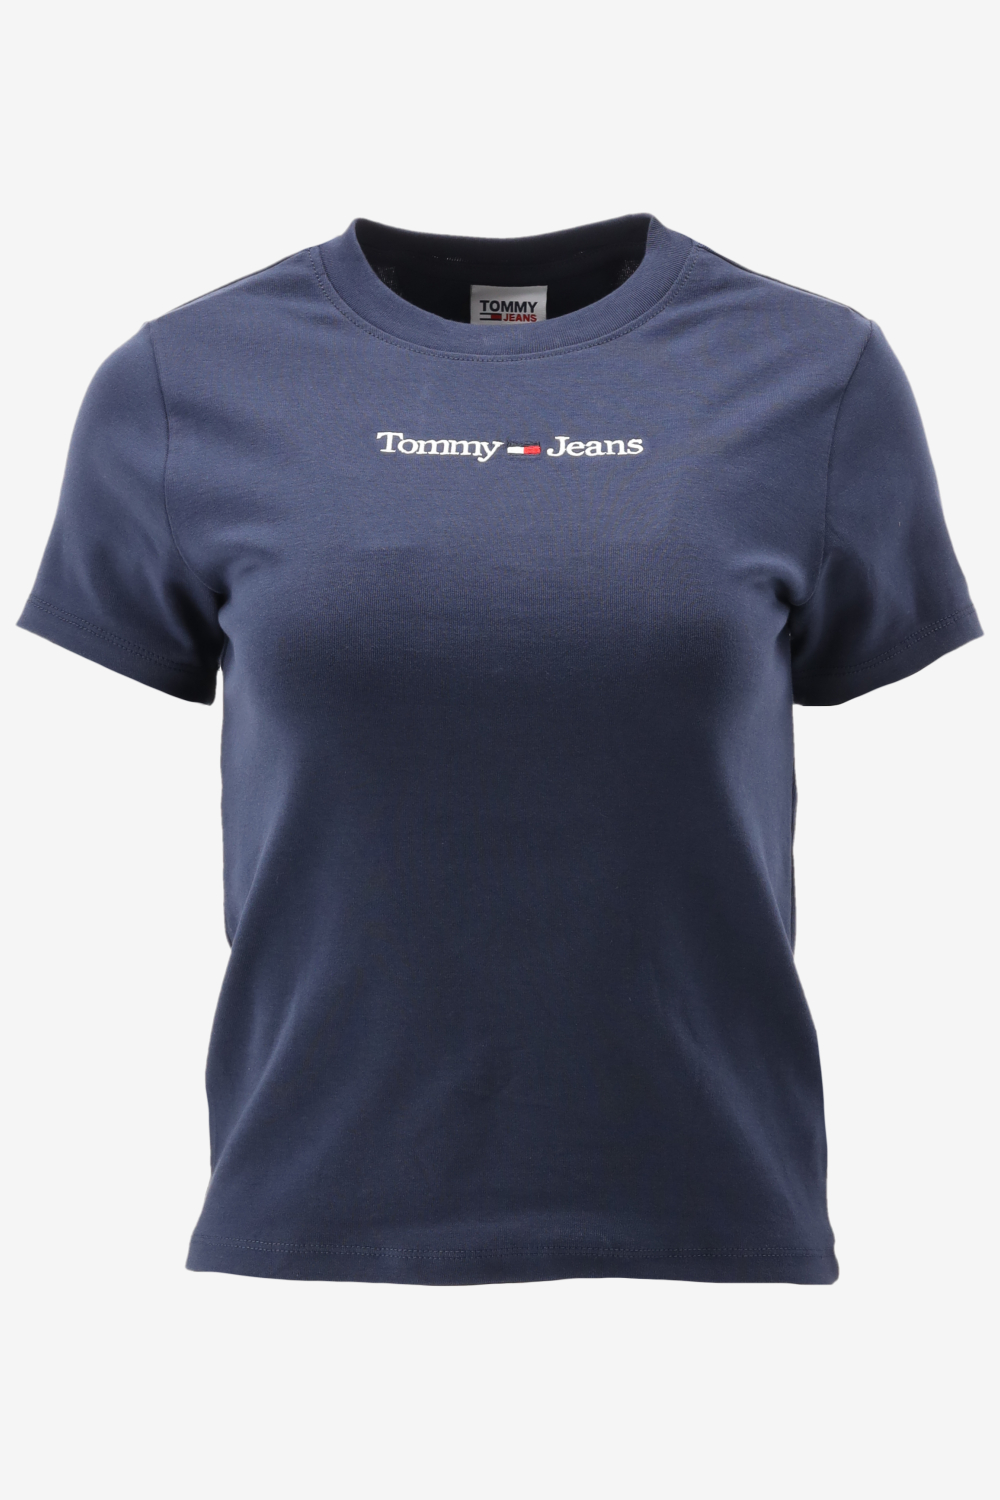 Tommy Hilfiger TJW BABY SERIF LINEAR SS Dames T-shirt - Blauw - Maat L